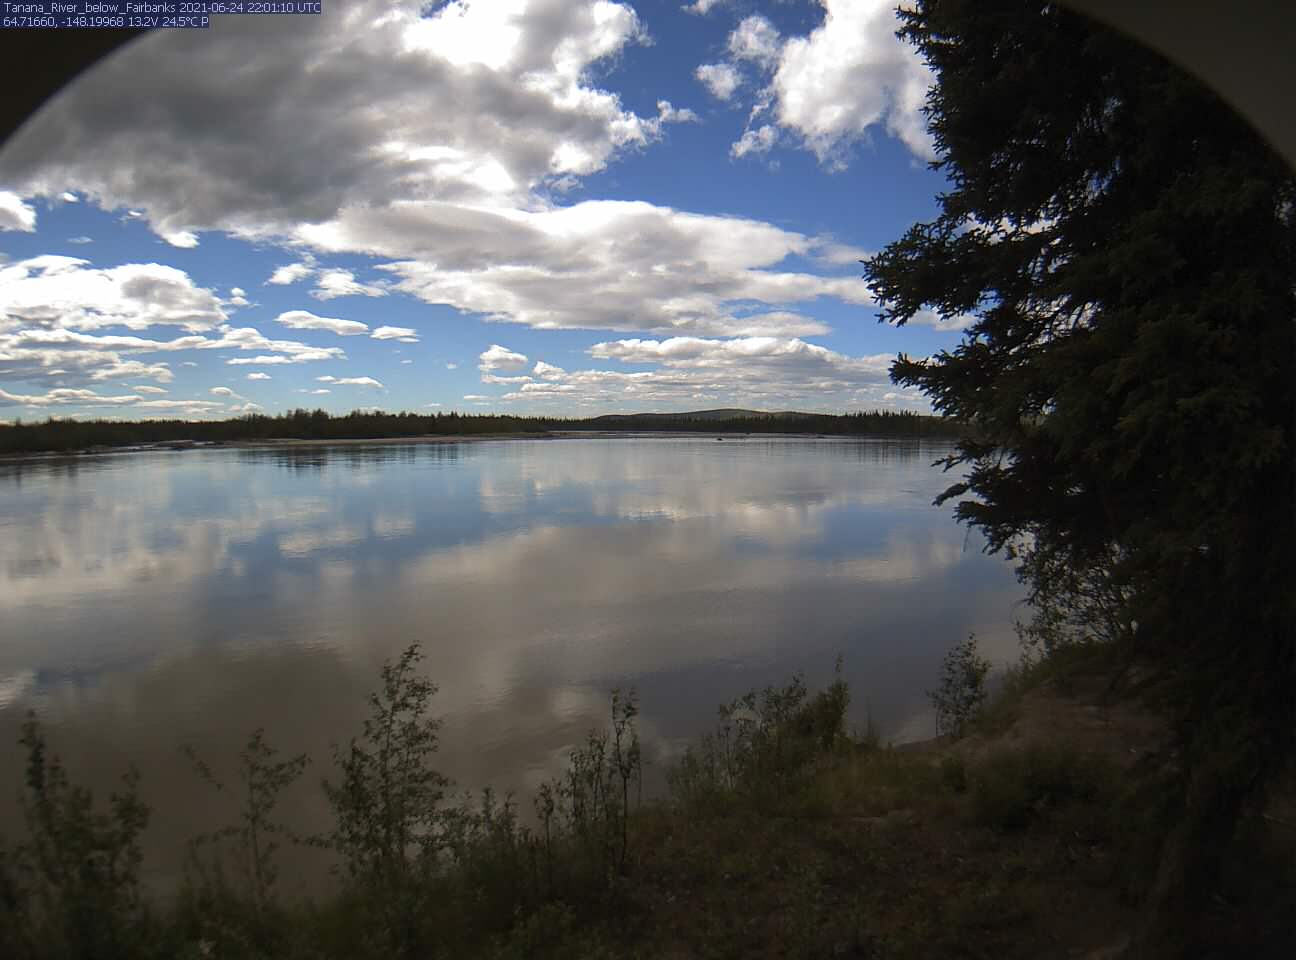 Tanana_River_below_Fairbanks_20210624220111.jpg